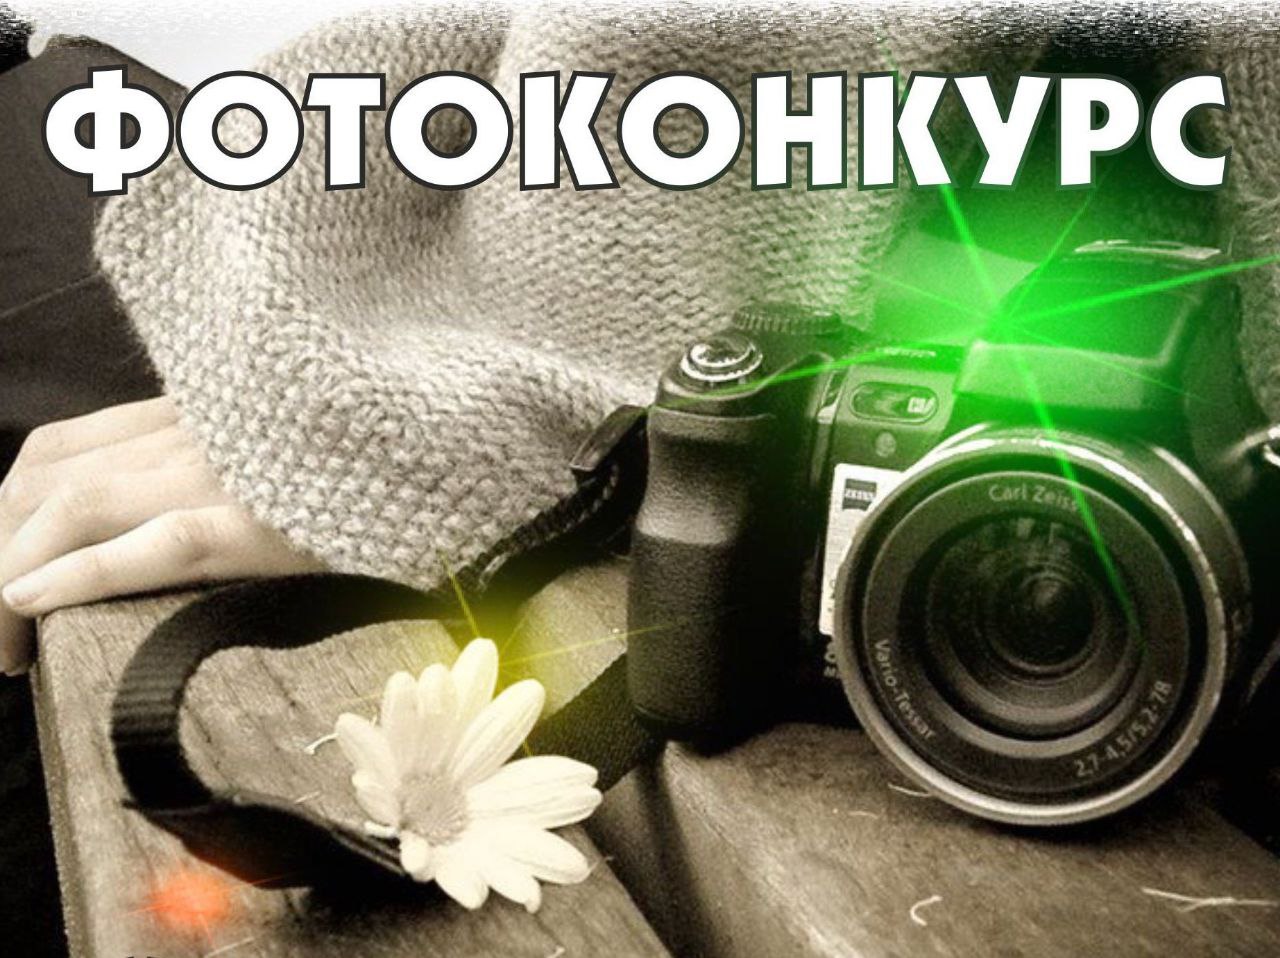 Министерство спорта и туризма Запорожской области объявляет о проведении семейного фотоконкурса.